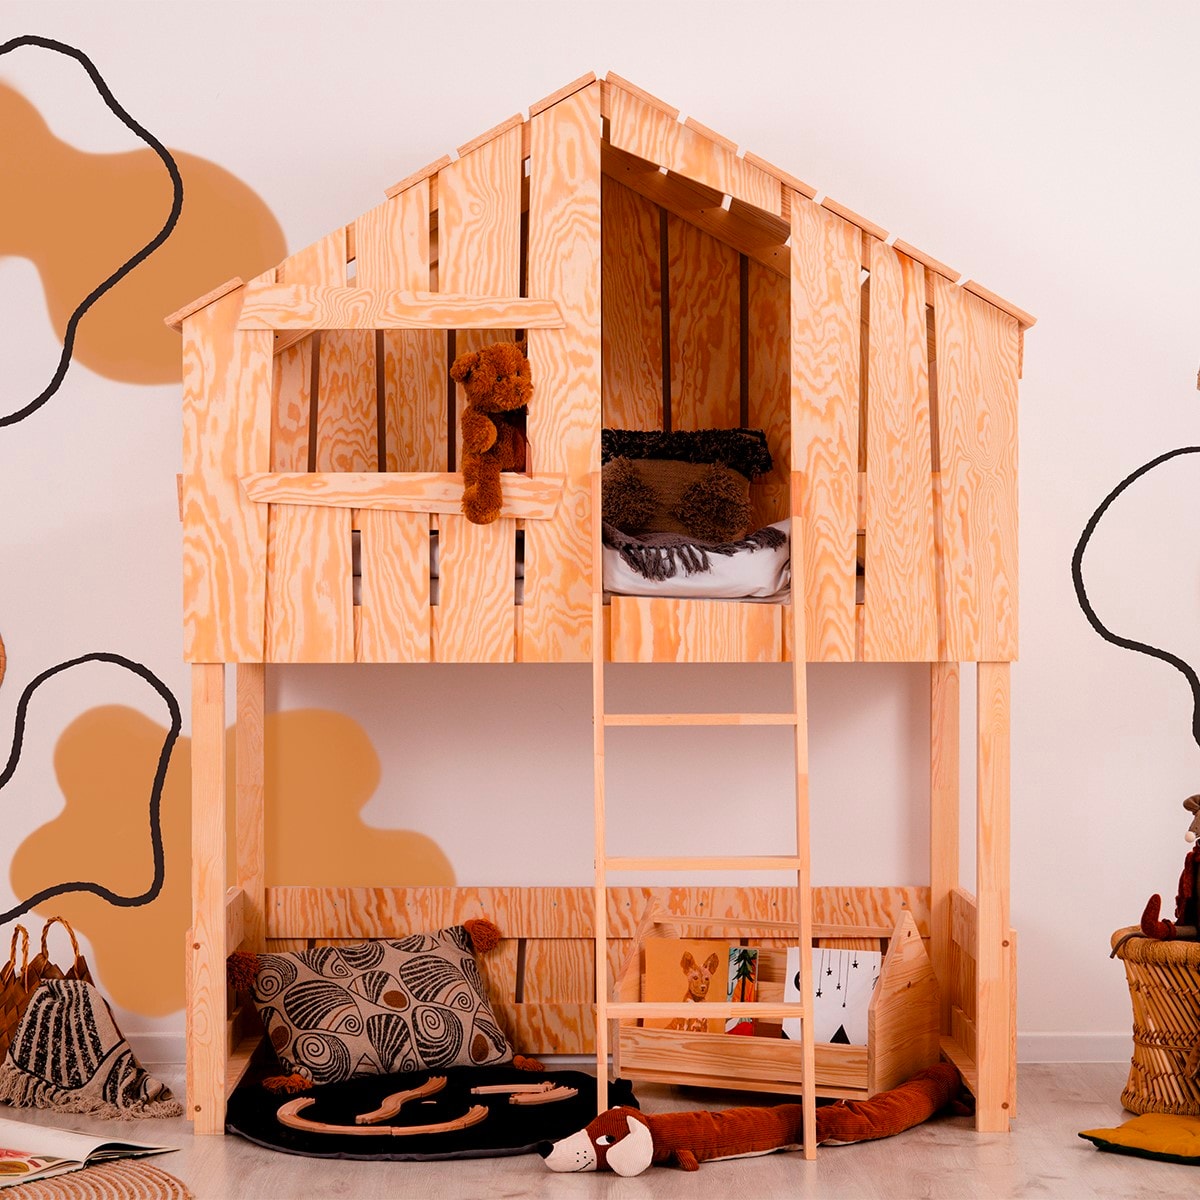 Lit enfant lit cabane 90 x 200 cm lit en bois pour chambre d'enfant avec